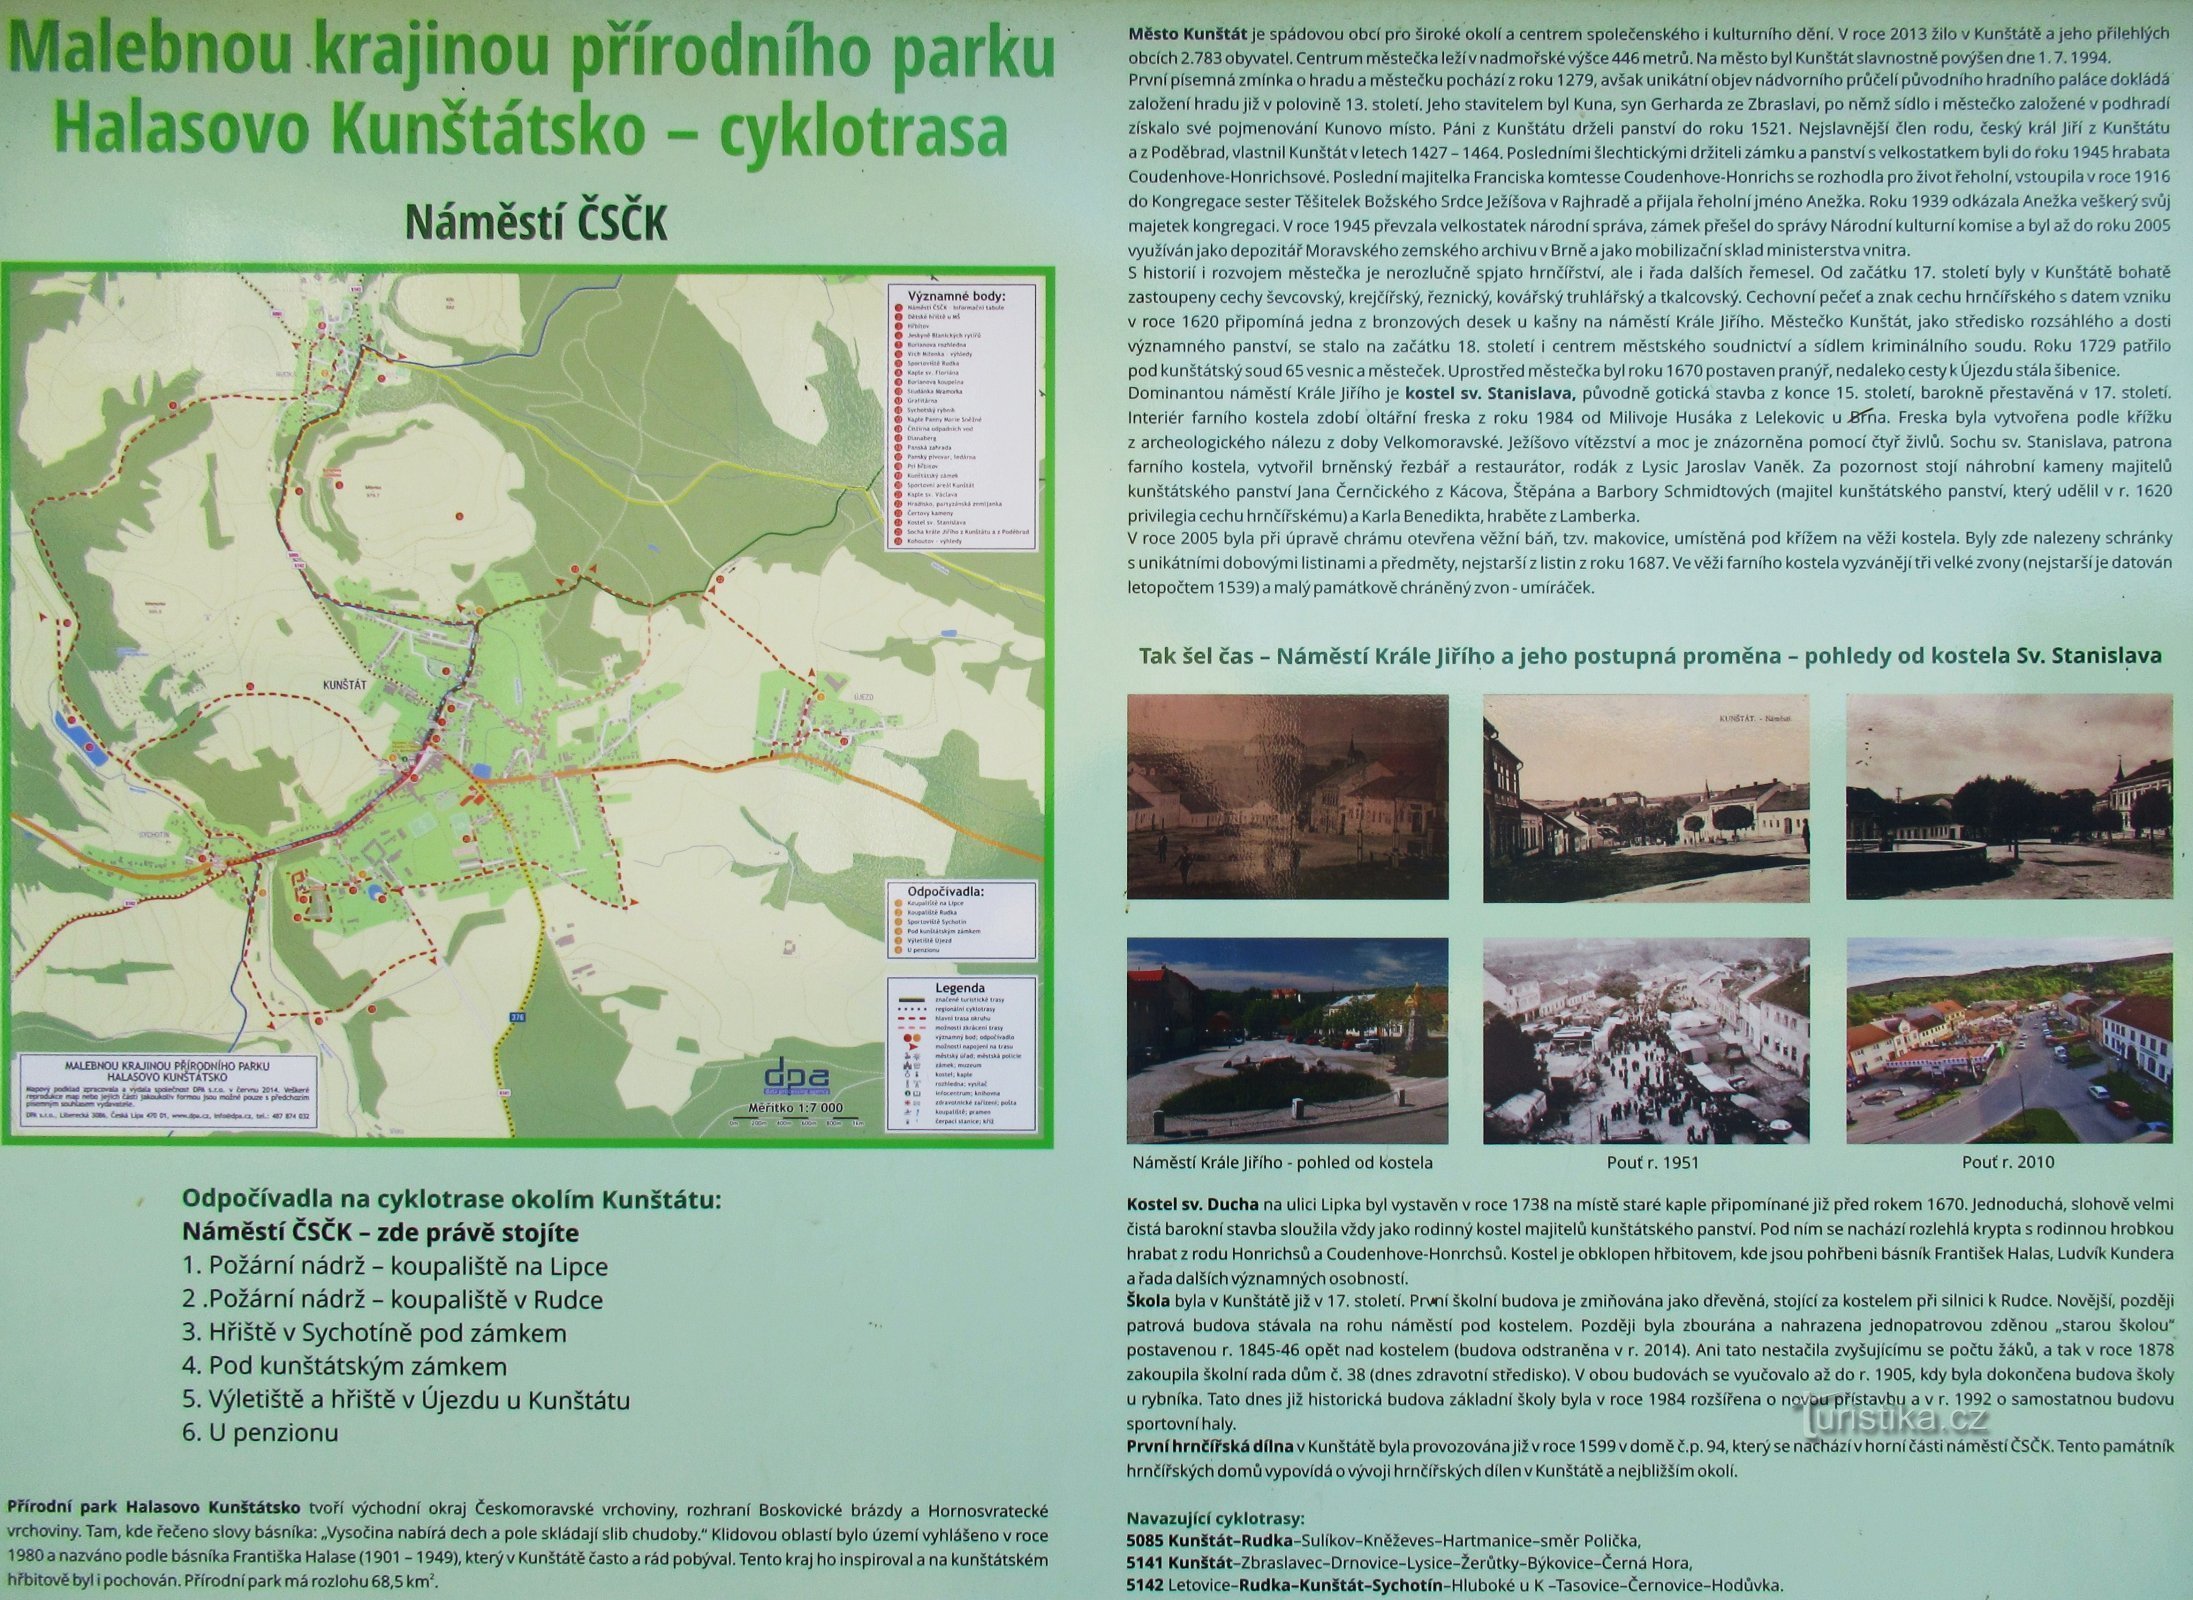 Genom Halasovo Kunštátsko naturpark till den lokala delen - Rudky